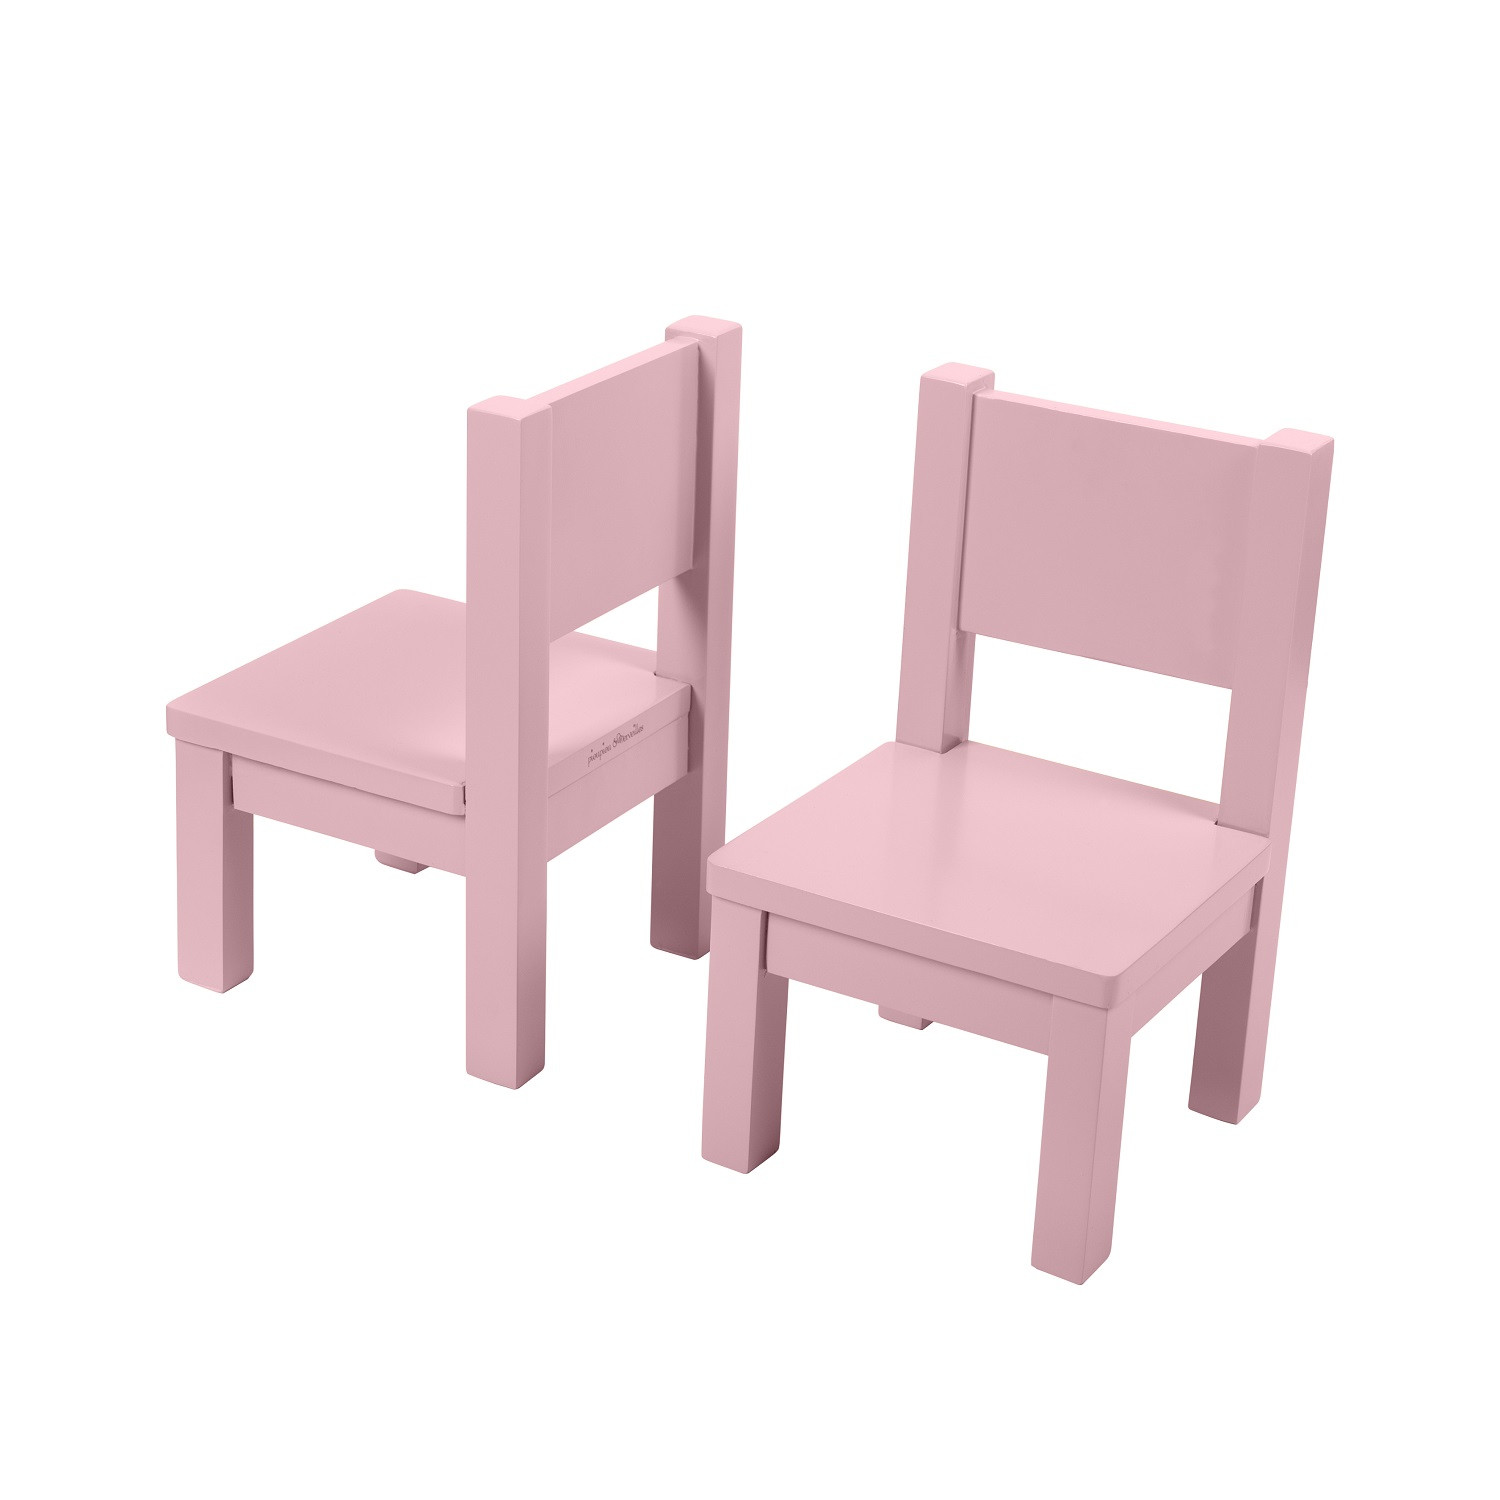 Ma première chaise, chaise enfant bois massif design coloris rose